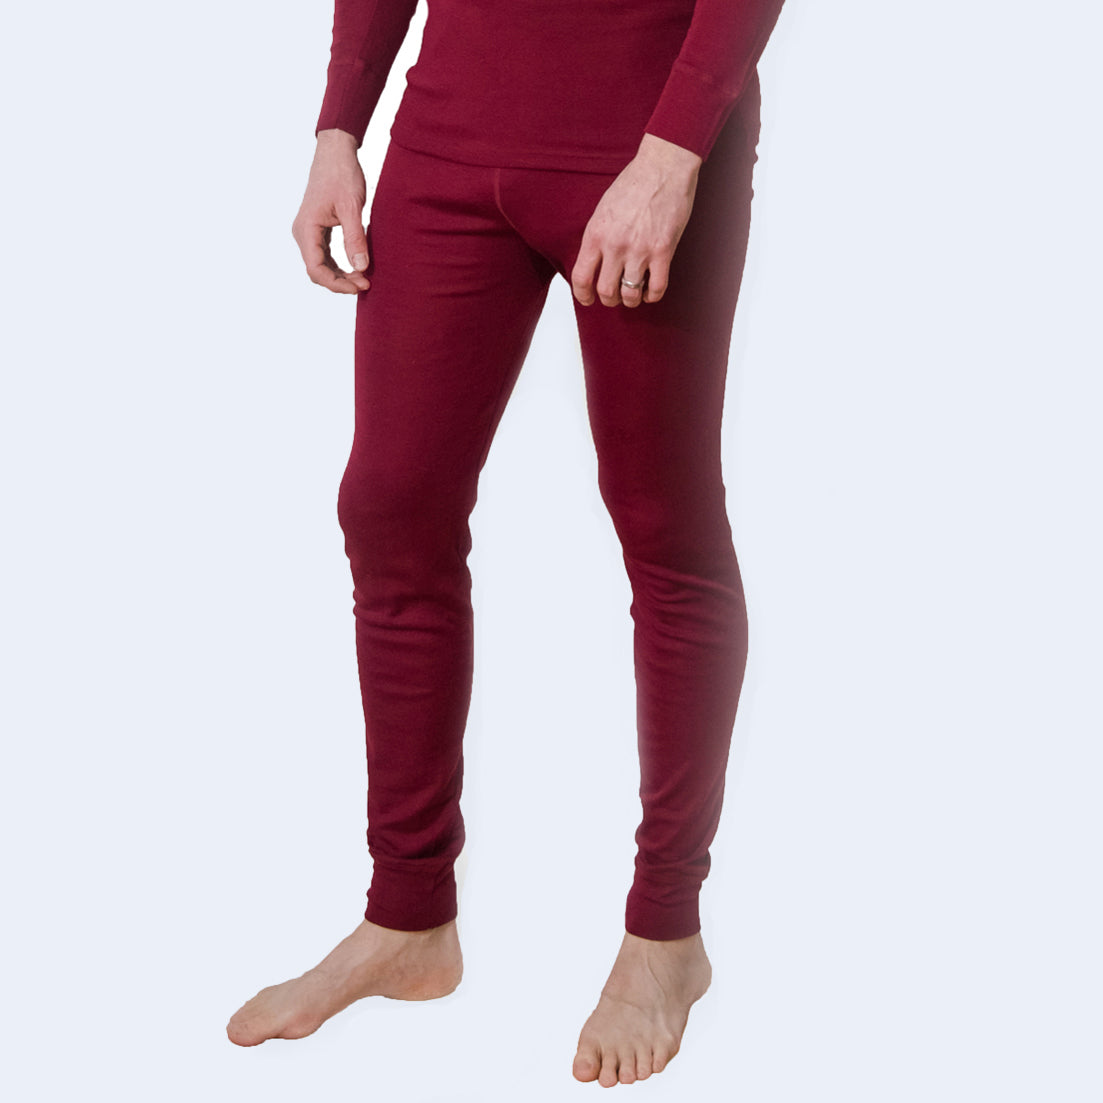 Buy XTM Bulgaria Merino Wool Plus Size Thermal Pants Burgundy 18